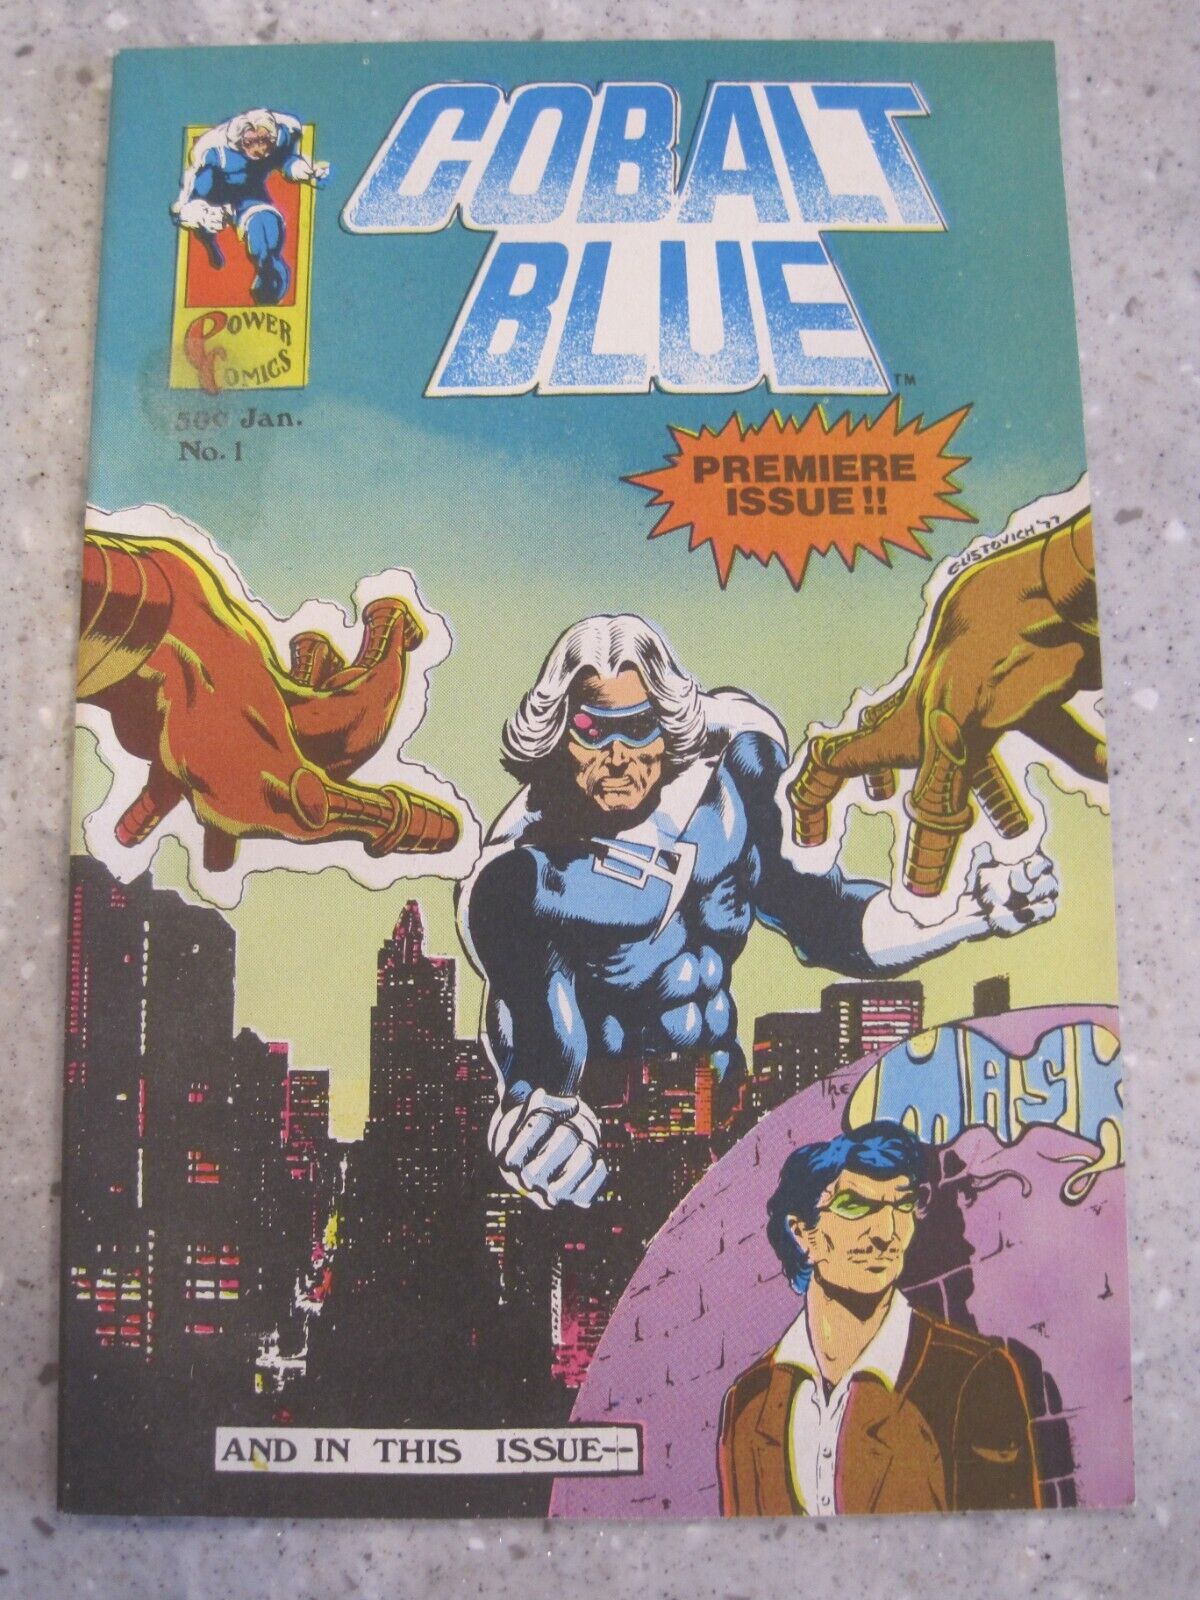 Power Comics Cobalt Blue 1977 Premiere Issue #1 (1B)